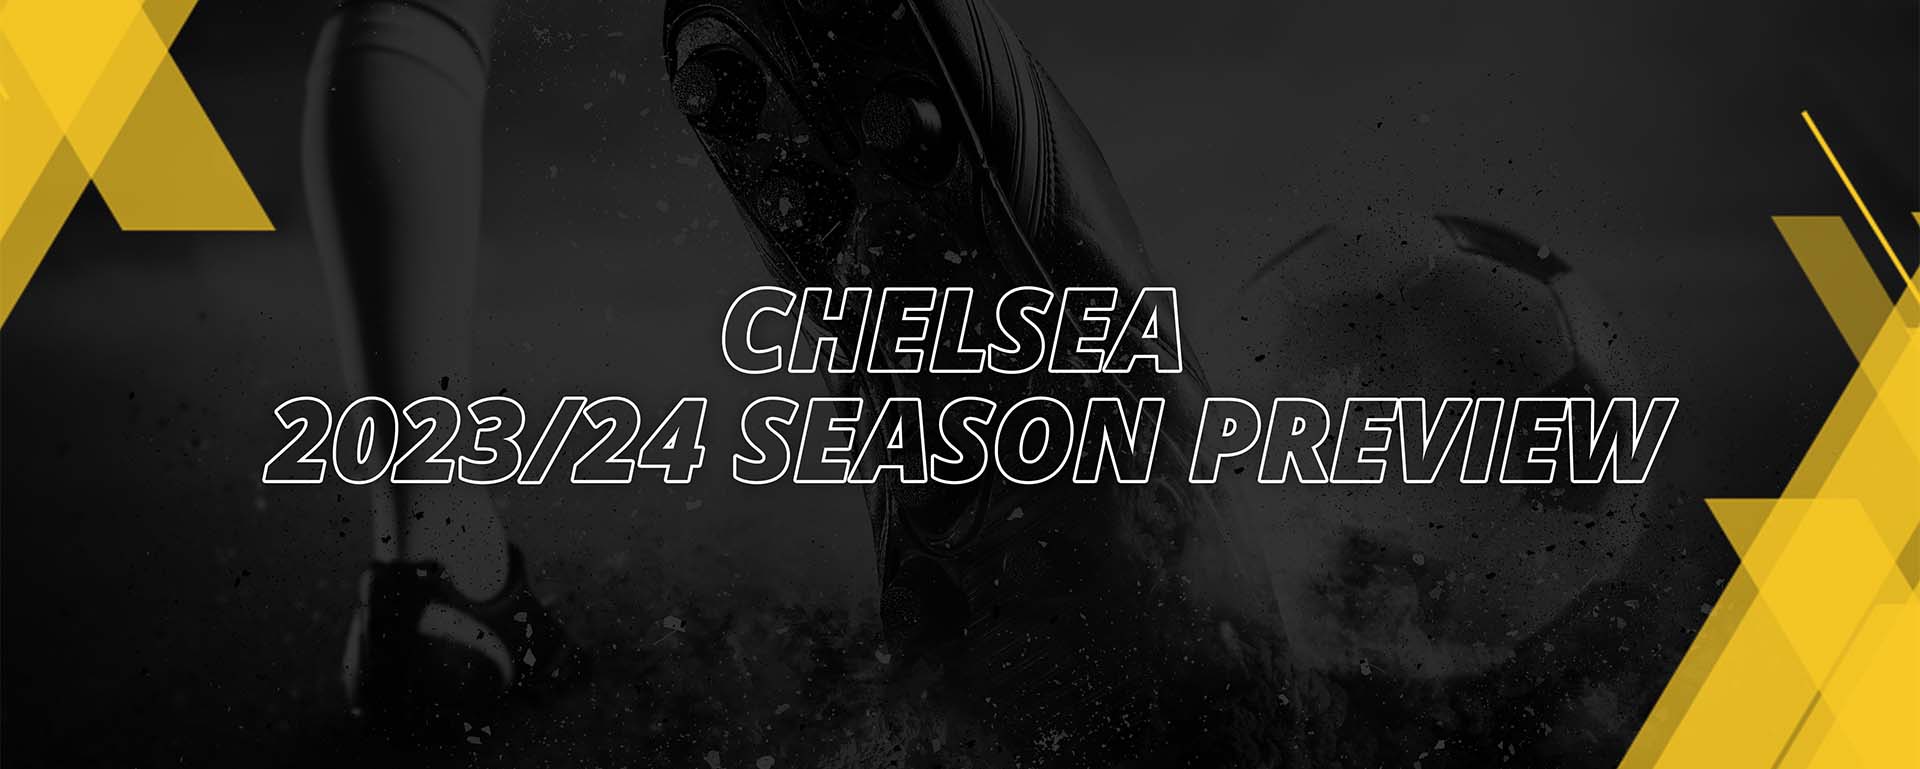 CHELSEA 2023/24 SEASON PREVIEW